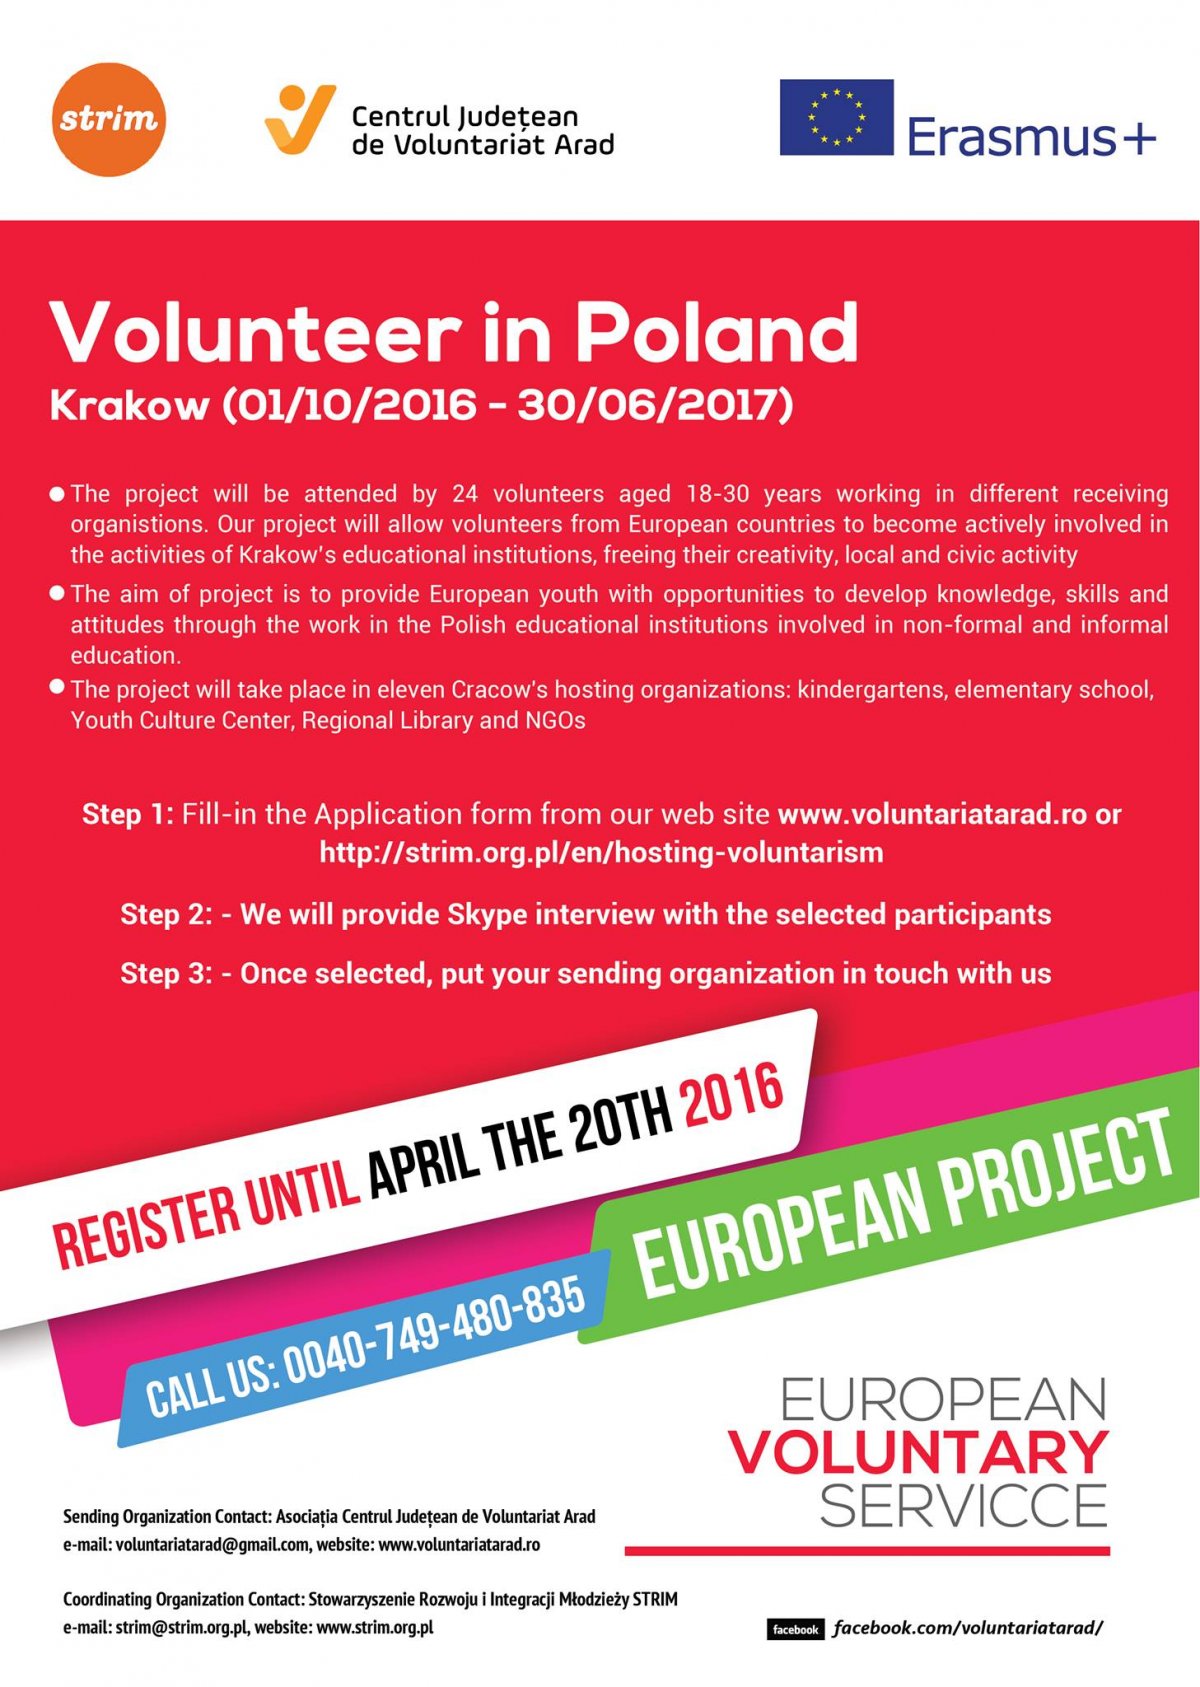 Mergi în Polonia ca voluntar în cadrul proiectului Erasmus Plus